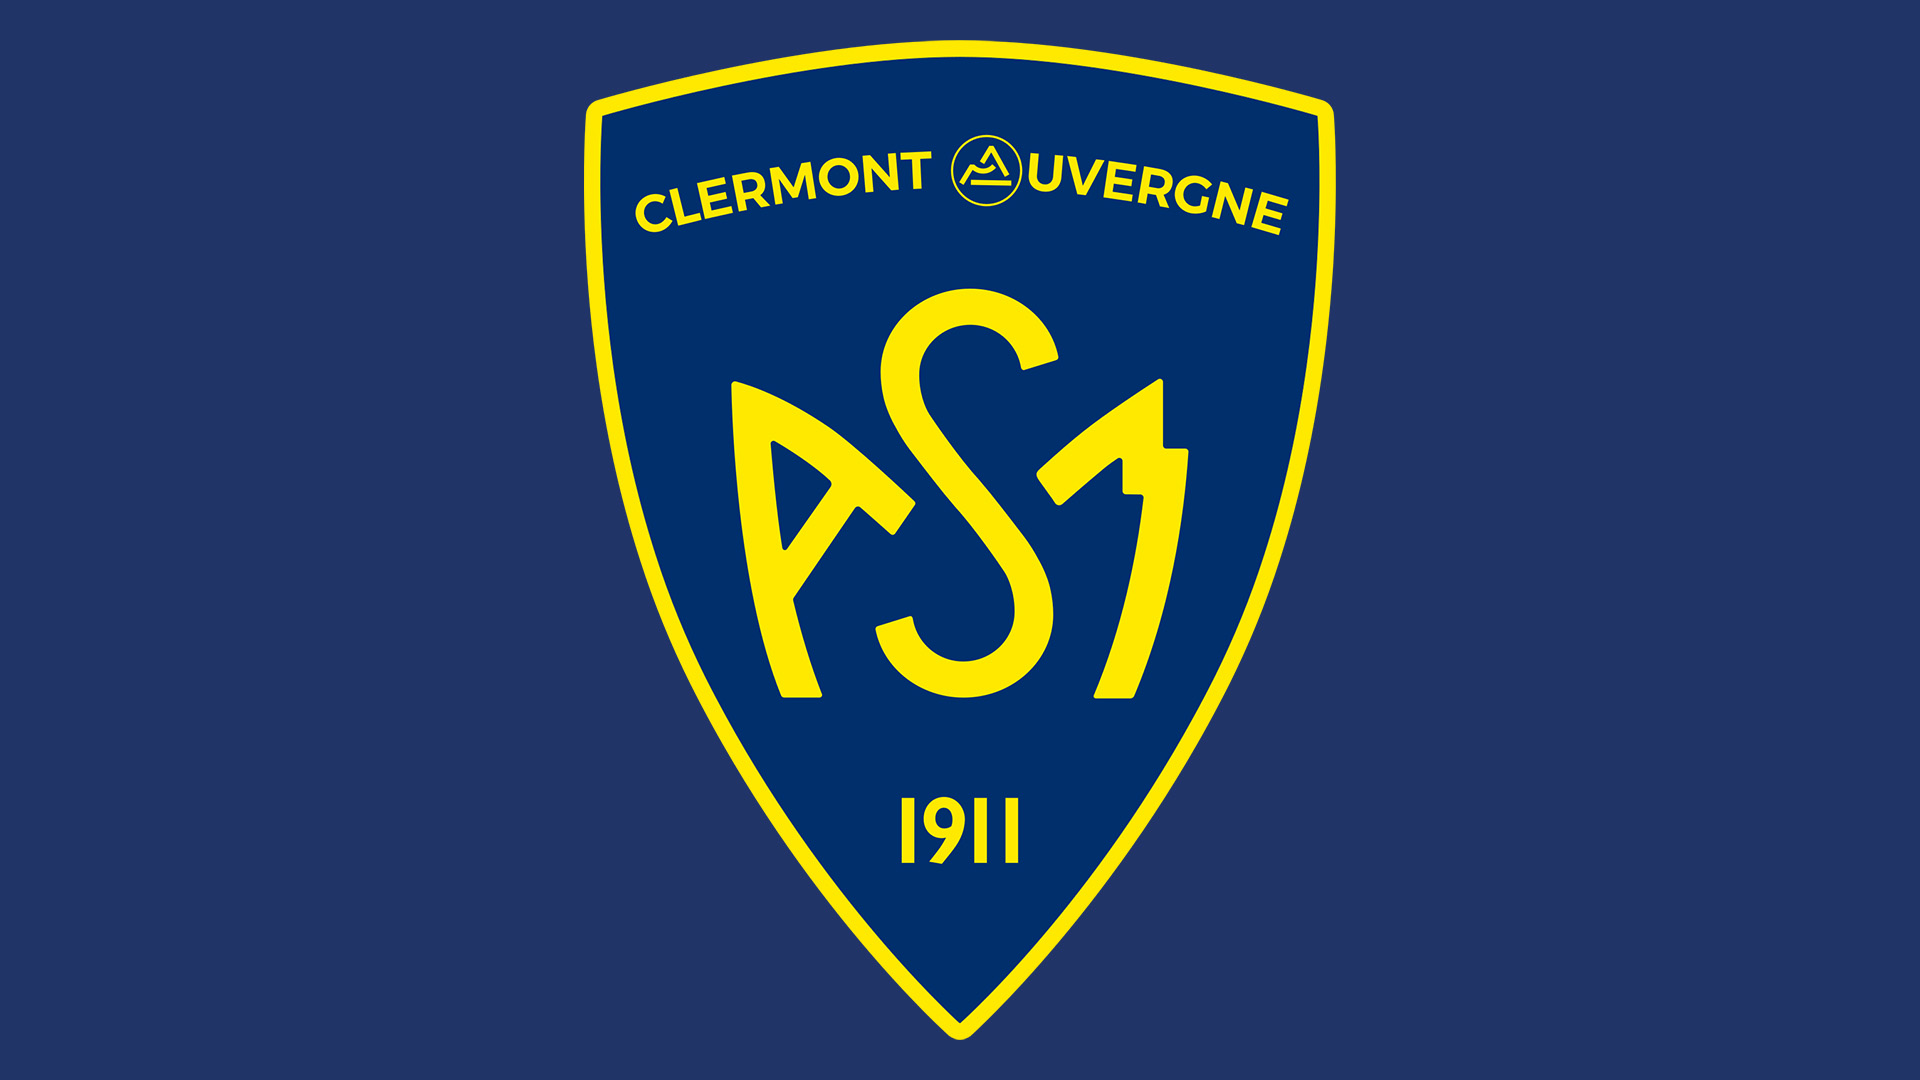 ASM Clermont Auvergne - Toulon